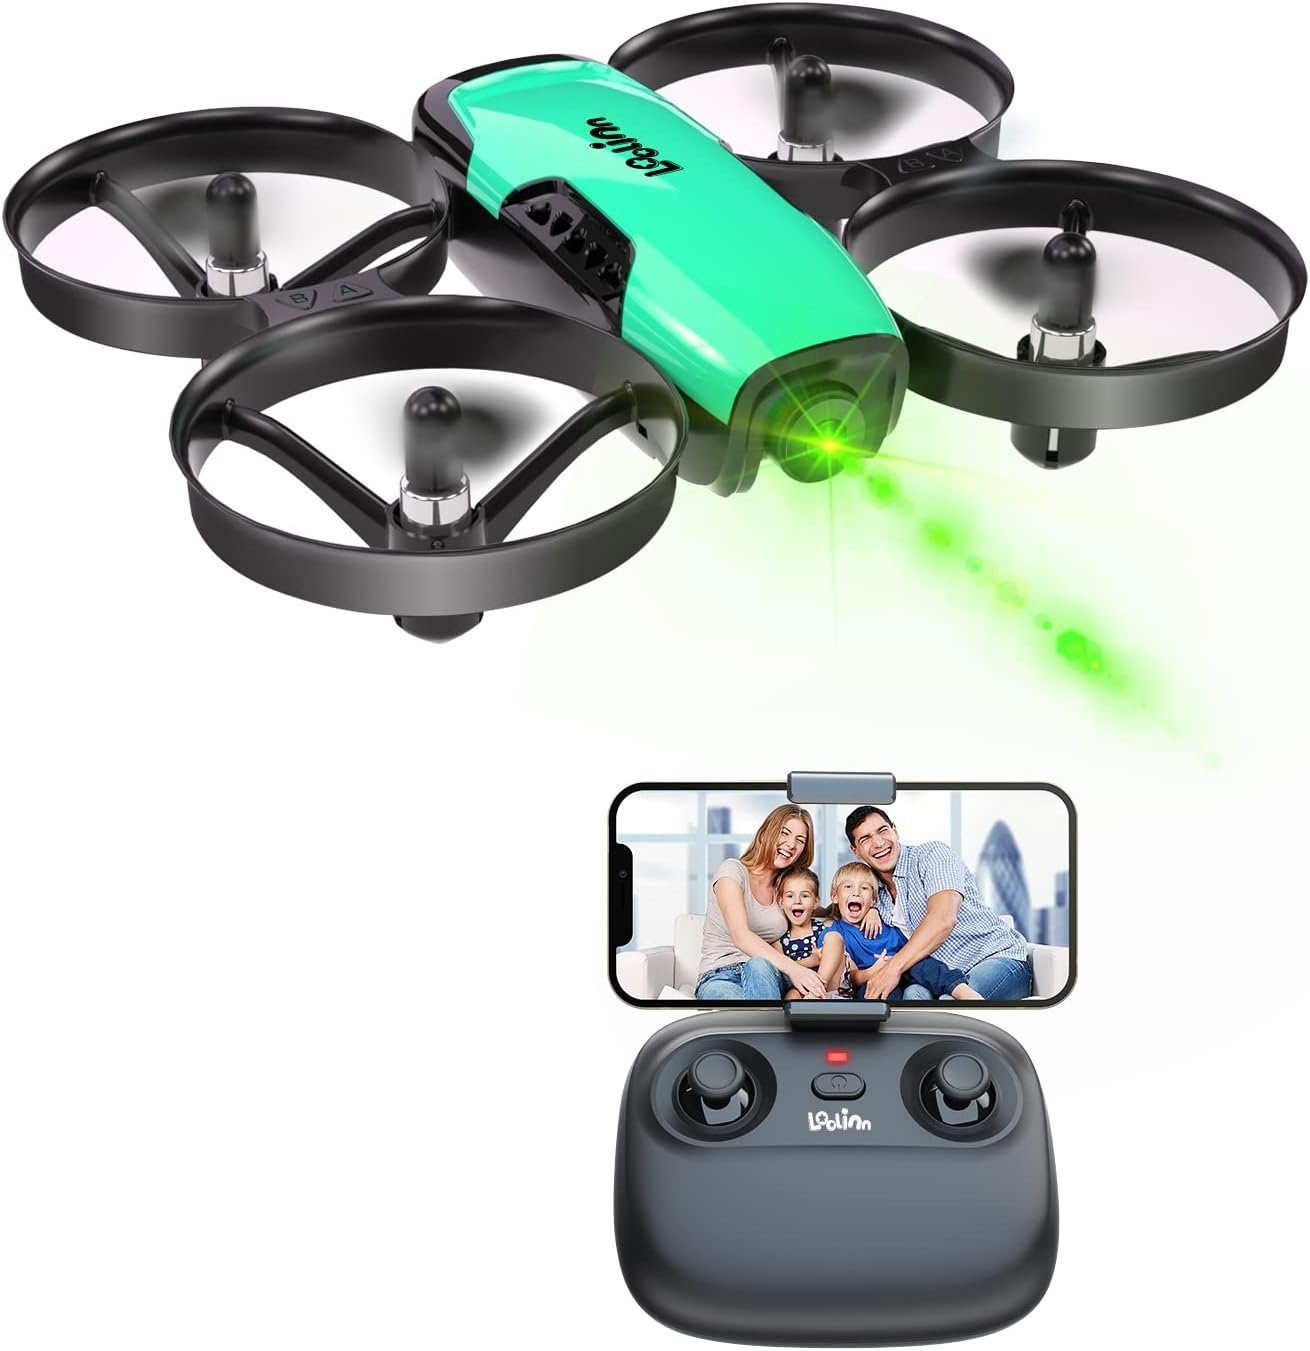 Kinder Video 2 für Loolinn (Kamera Drohne Mini Fotos FPV Drohne Geschenk) & Batterien